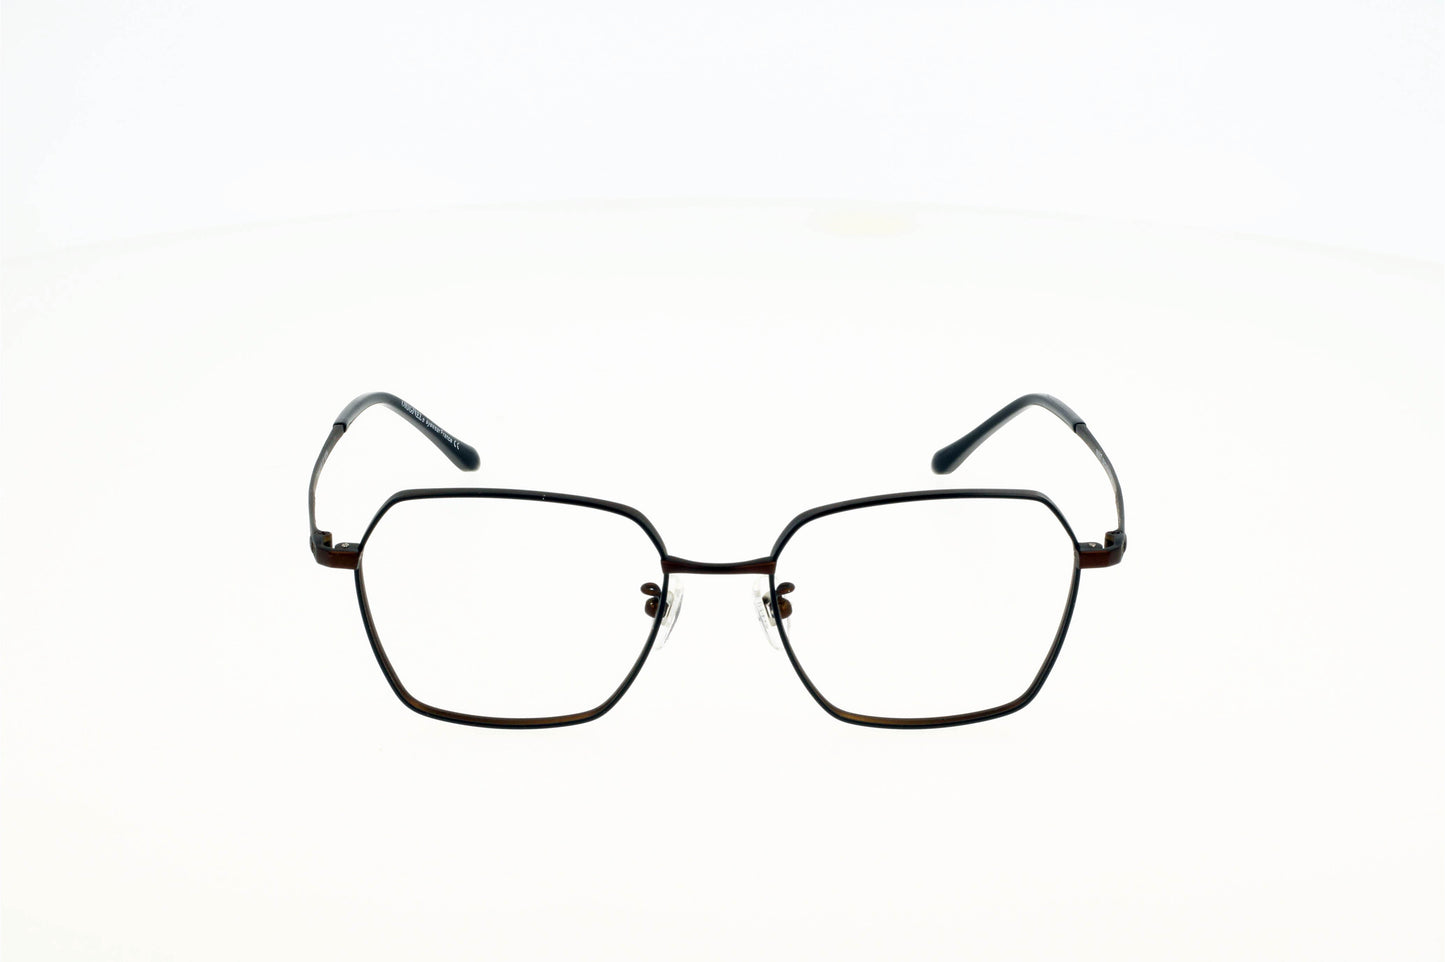 Originel eyewear France vous propose la lunette IROKO pour femme en métal fine et légère. Elle tendance en 2023 grâce à sa forme carrée.